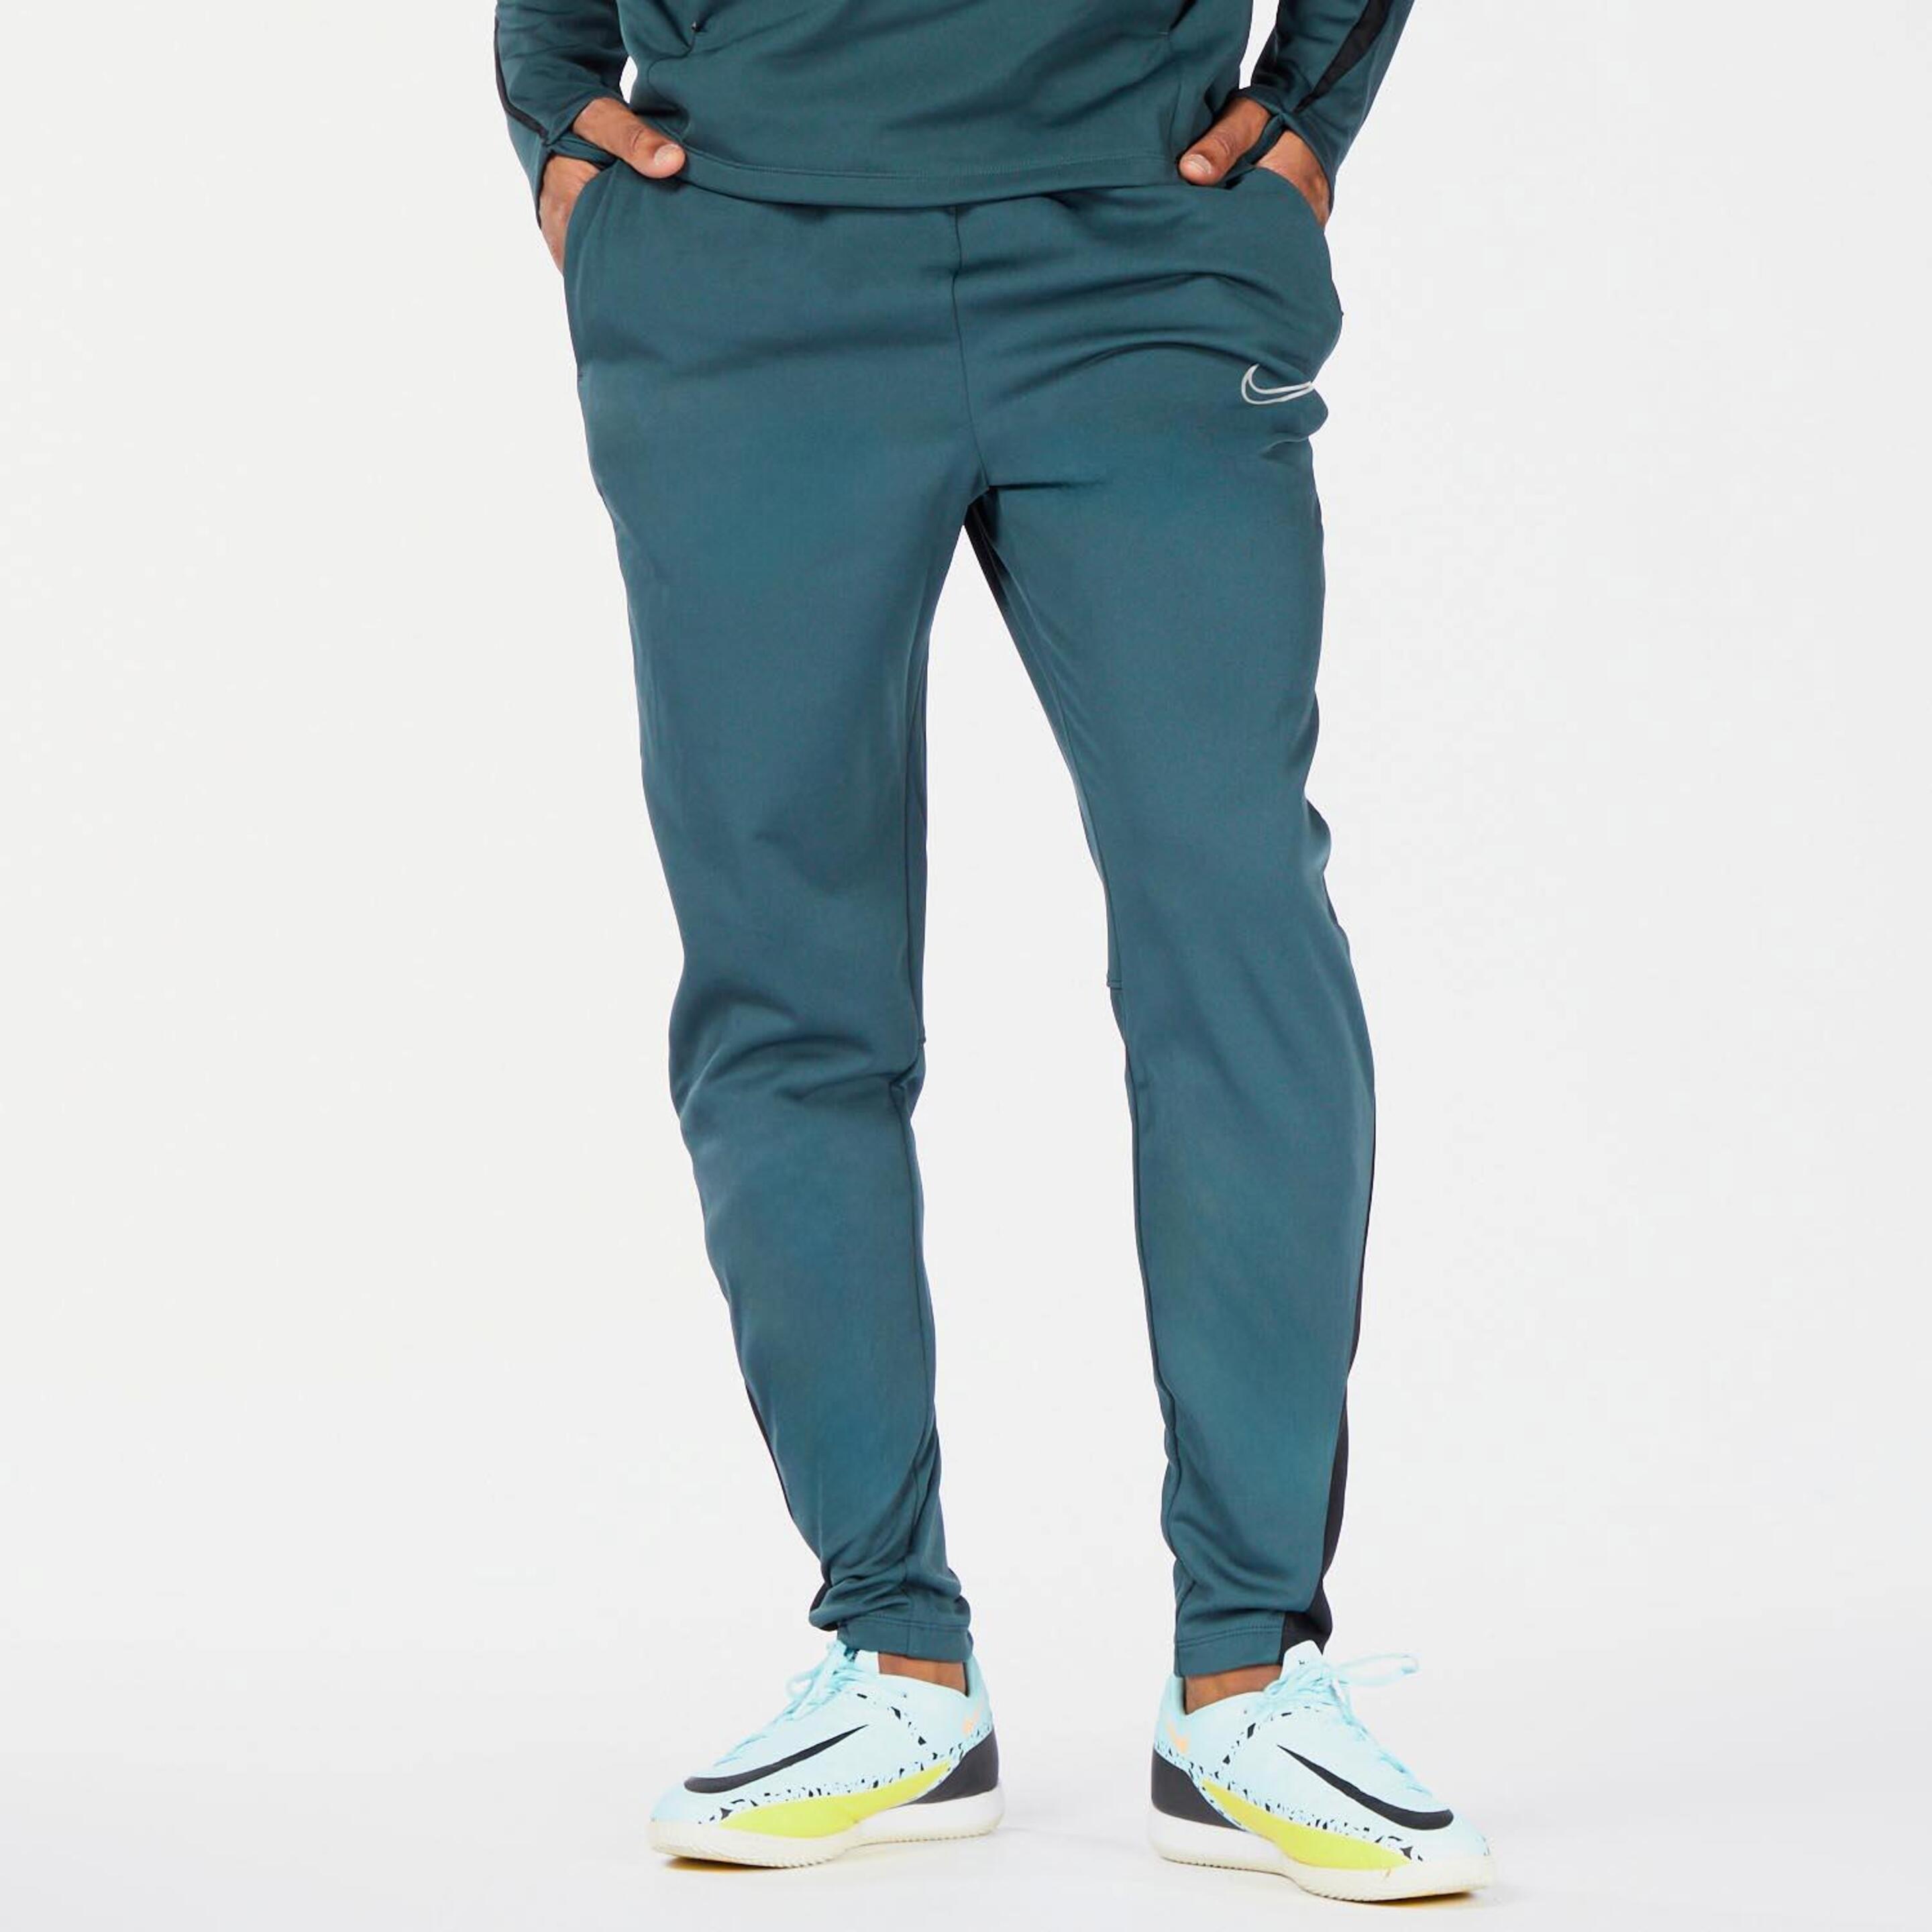 Nike Winter Warrior - Verde - Calças Homem | Sport Zone